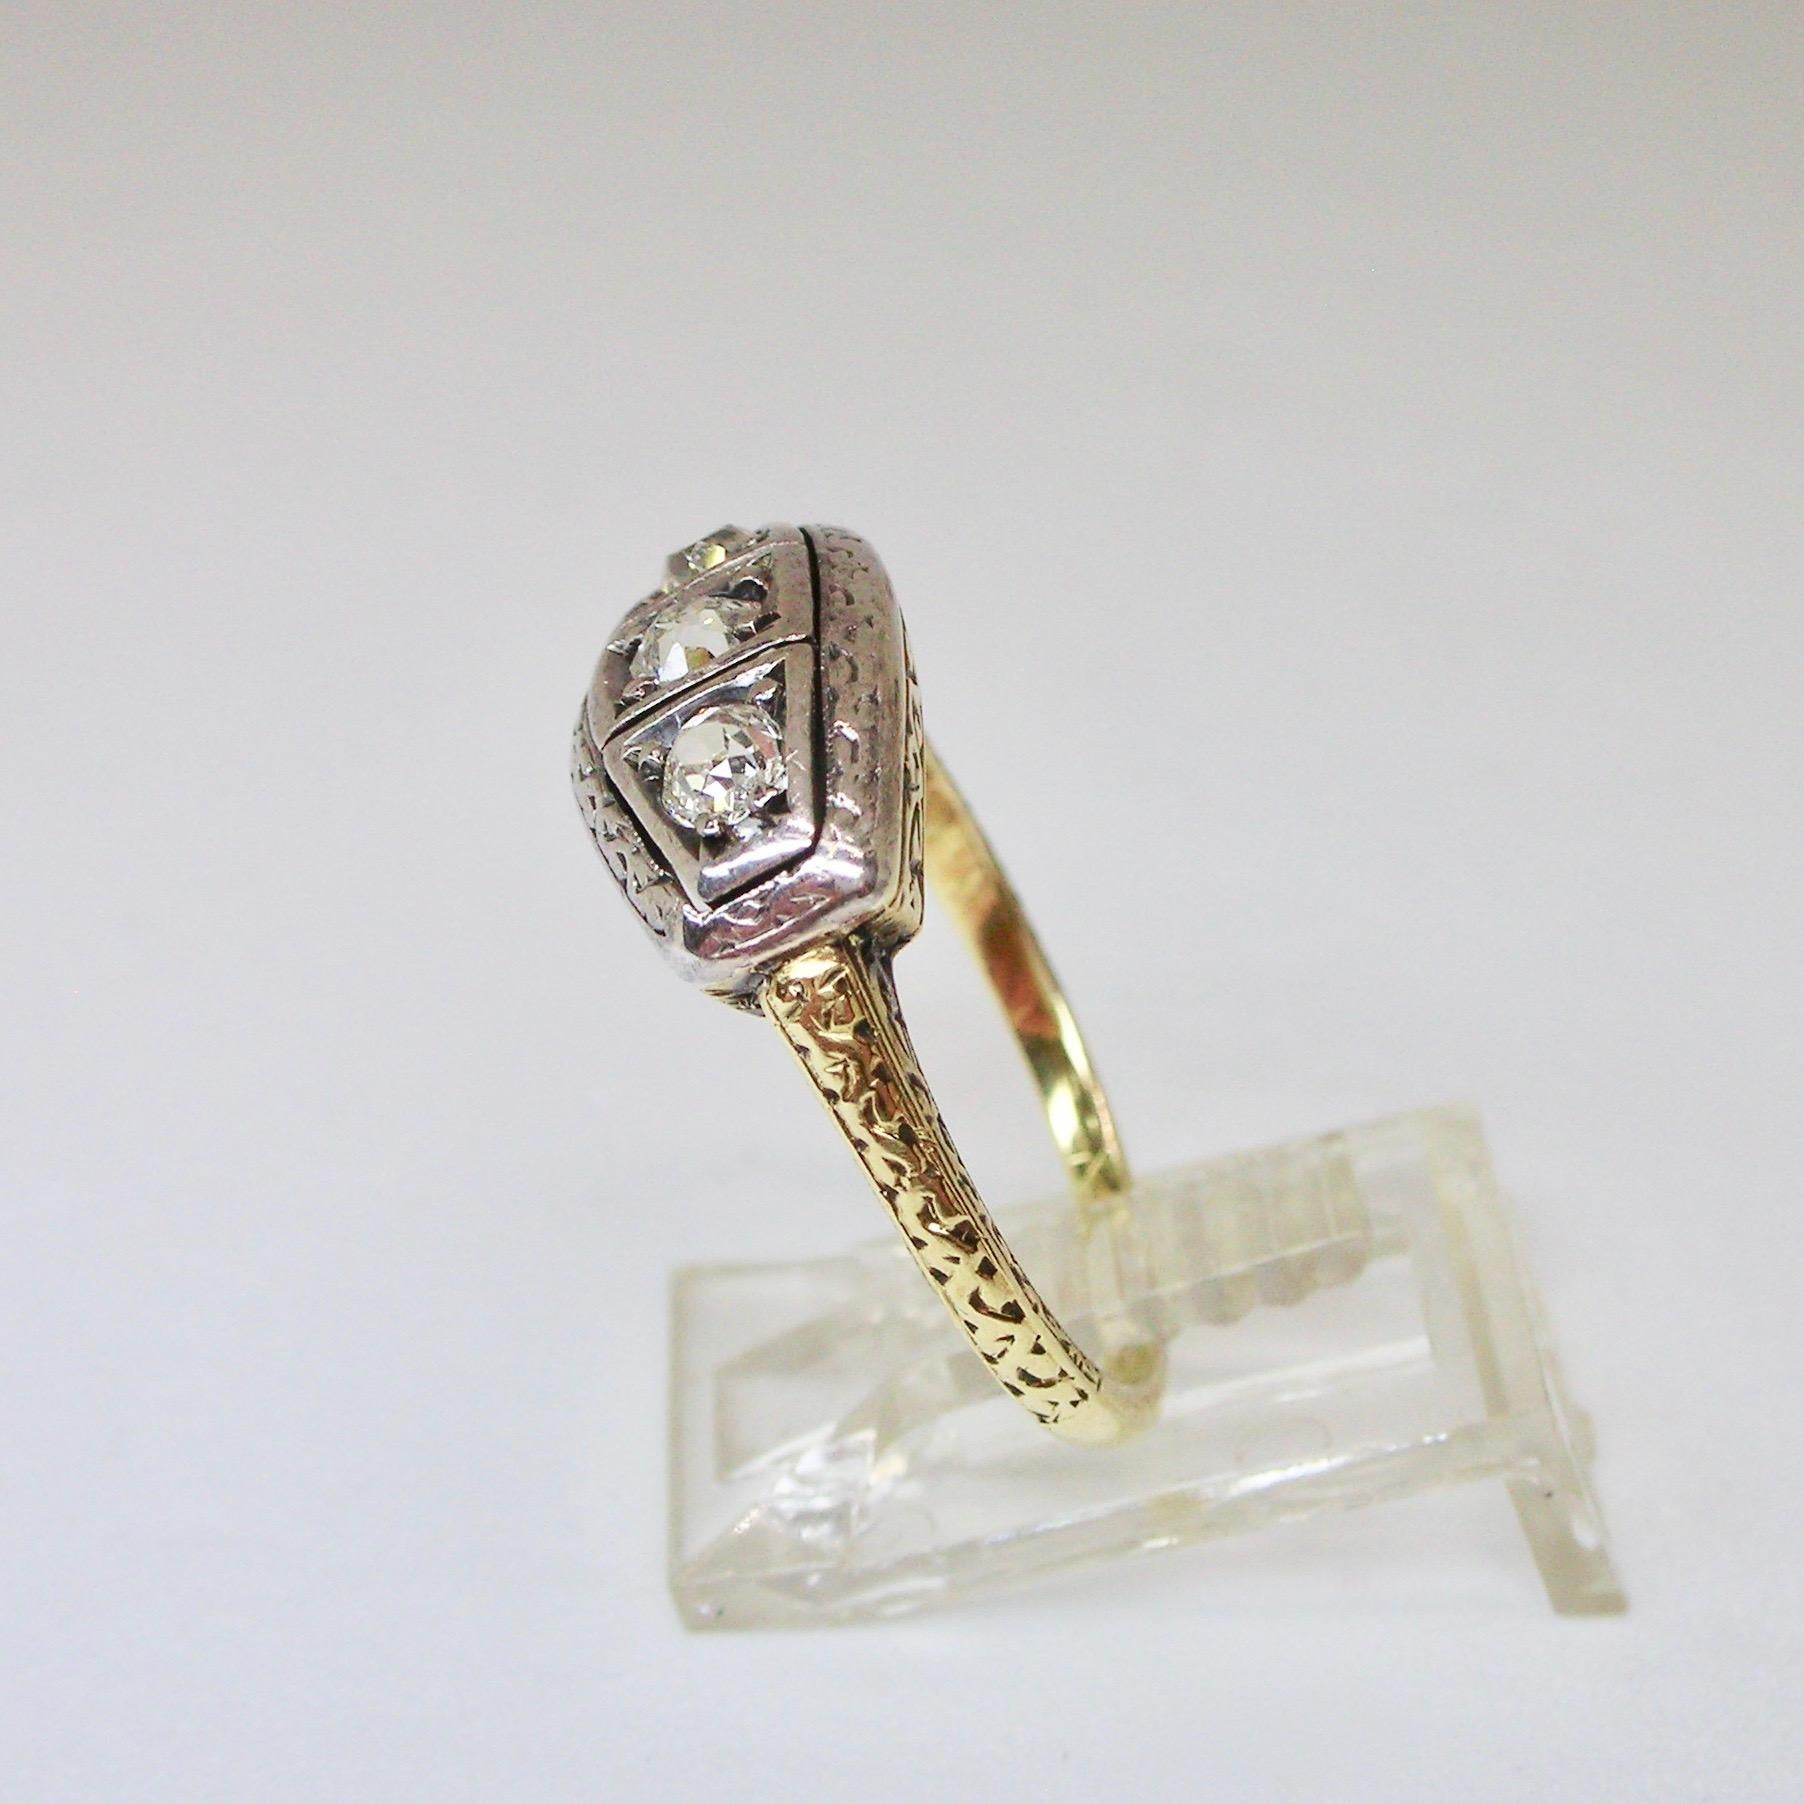 Italienischer Diamantring mit altem Schliff vom Anfang des 20. Jahrhunderts, gefasst in 18-karätigem Weiß- und Gelbgold, fein graviert mit Diamanten im alten Minenschliff von insgesamt ca. 0,40ct.